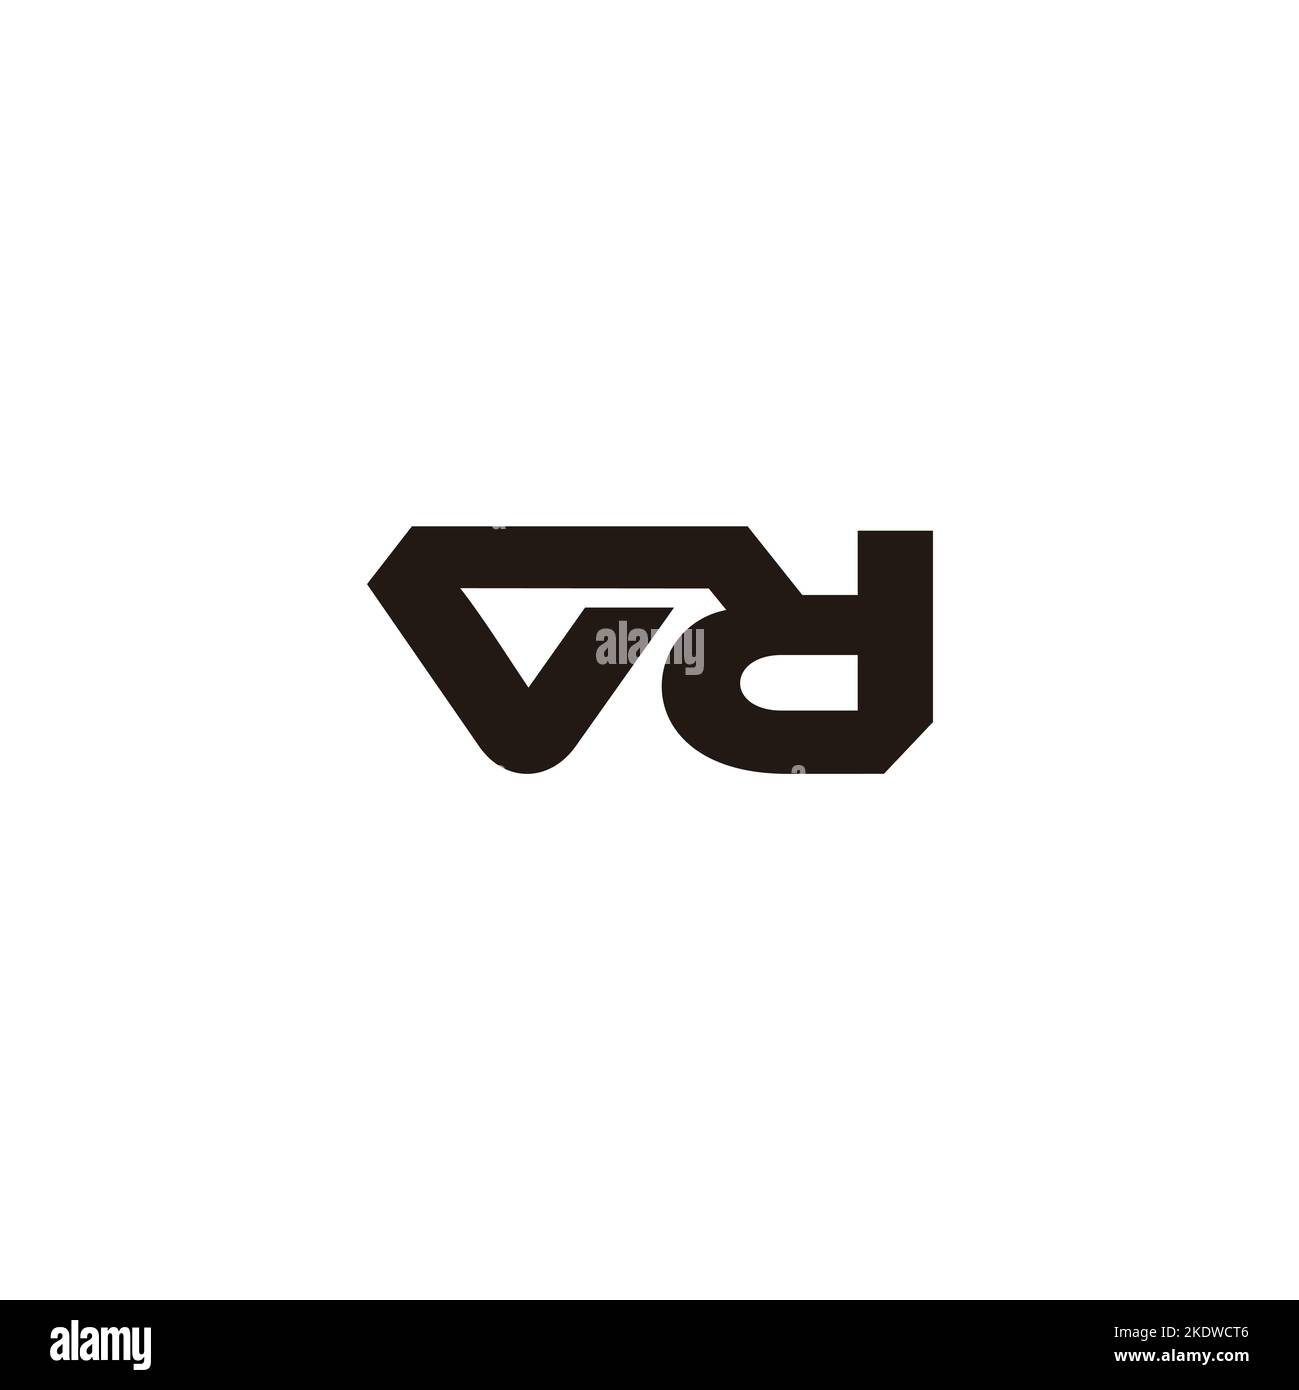 Letter vd einfache geometrisch verknüpfte Logo Vektor Stock Vektor